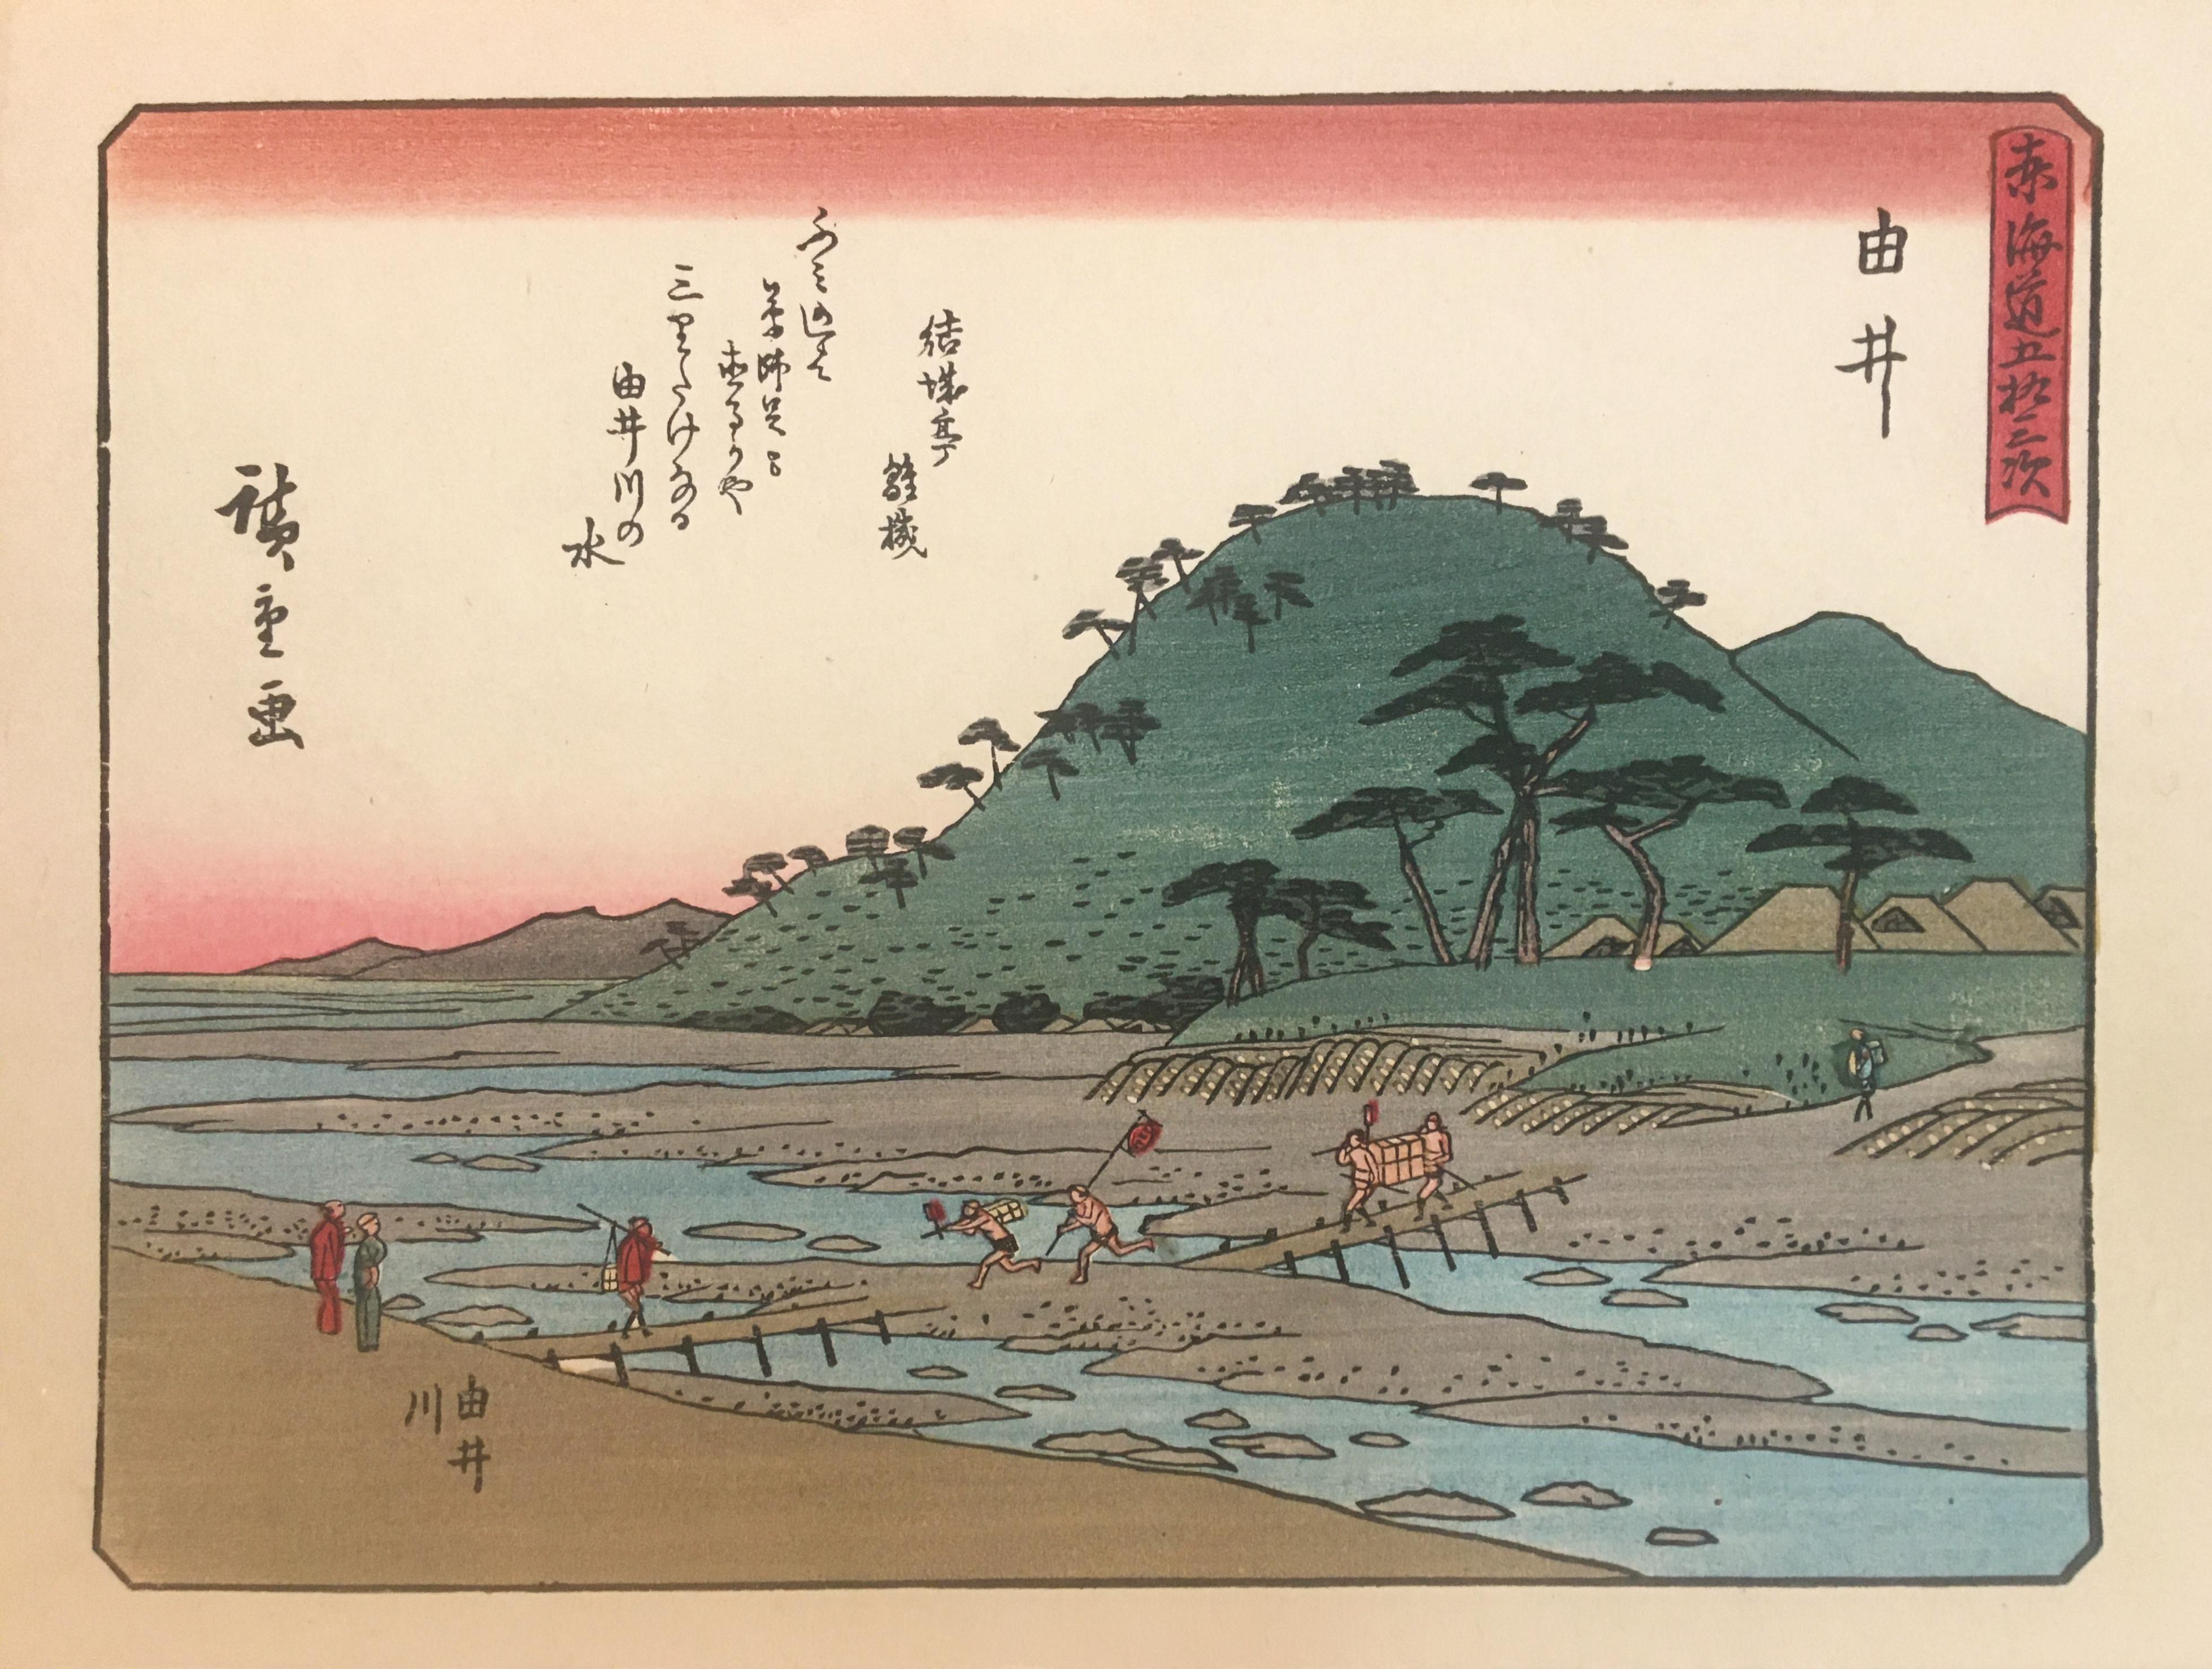 'View of Yui', After Utagawa Hiroshige, Ukiyo-E Woodblock, Tokaido, Edo